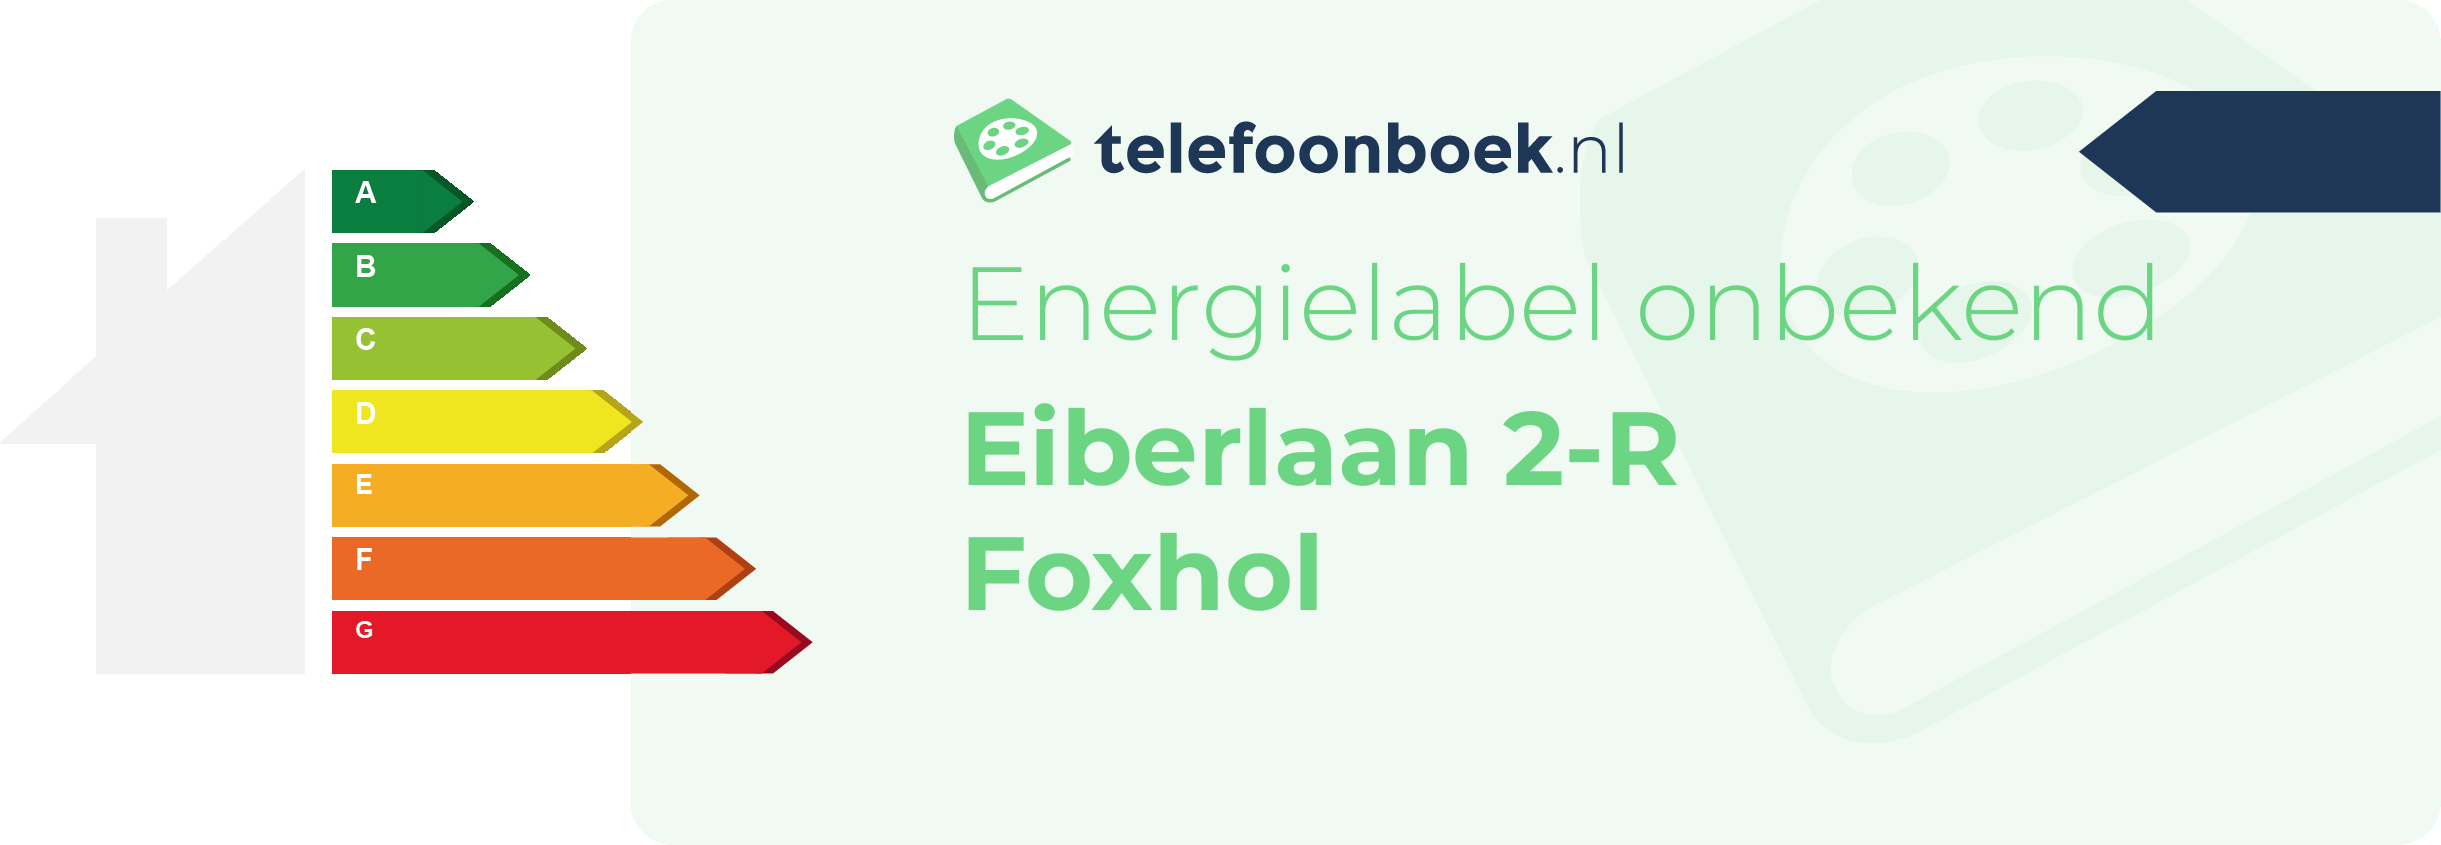 Energielabel Eiberlaan 2-R Foxhol